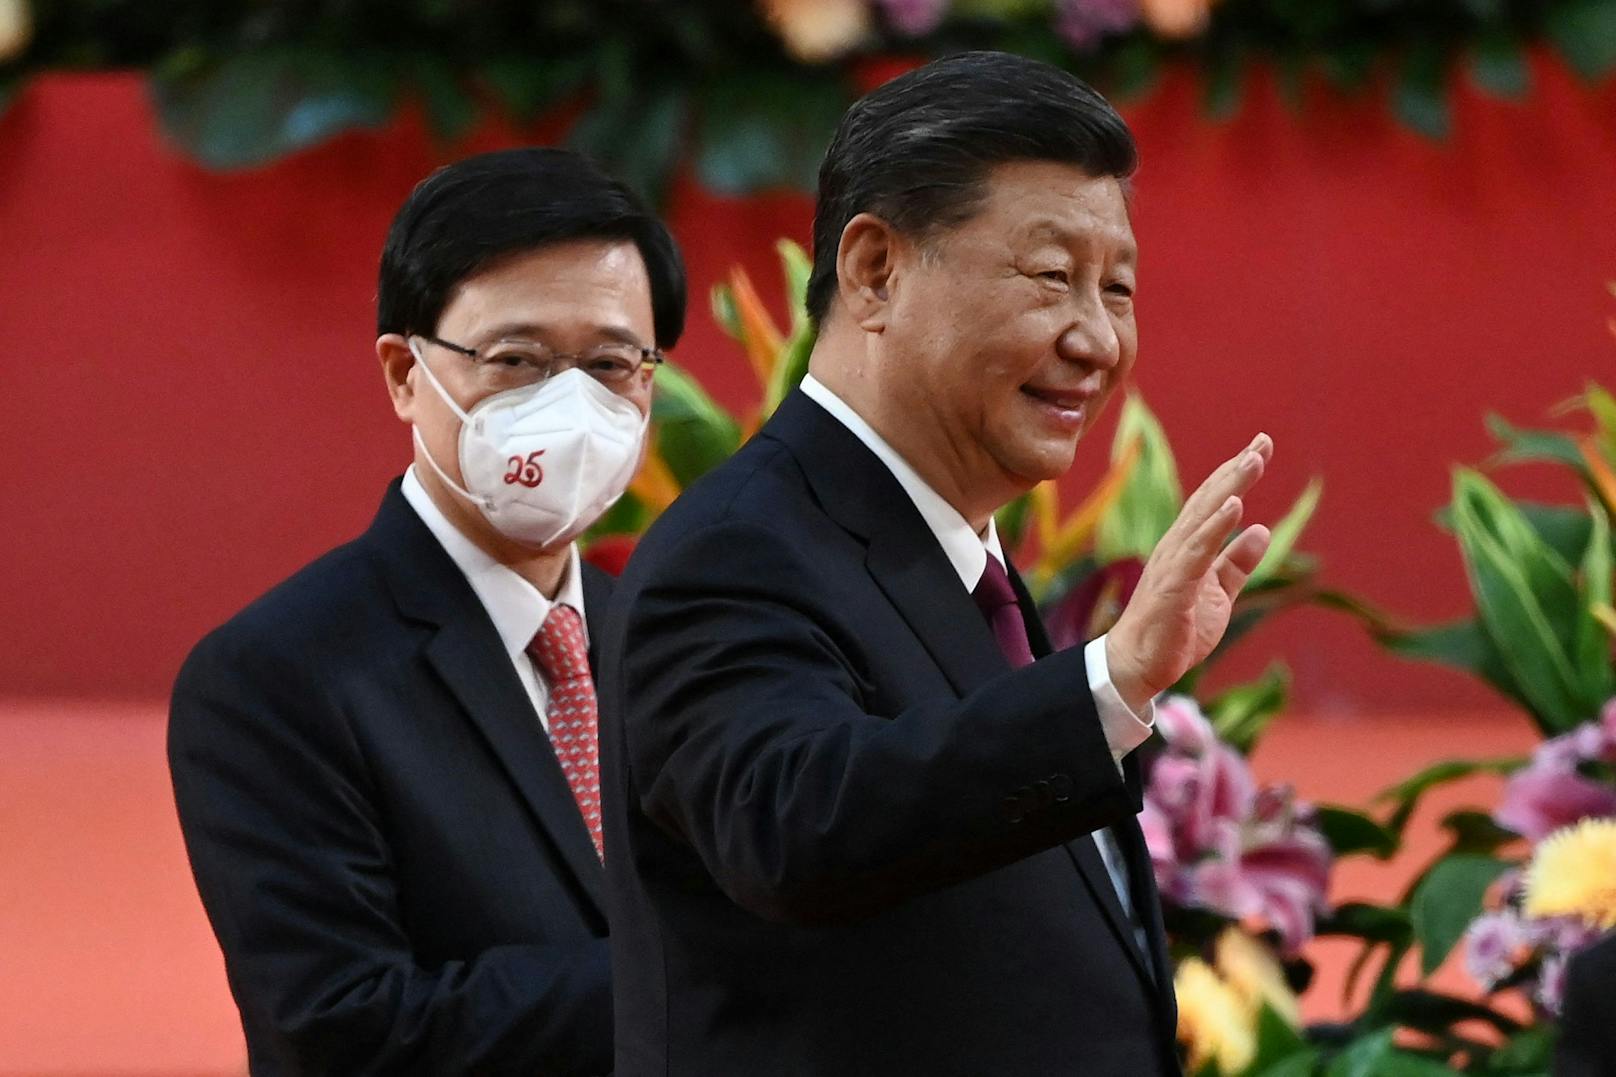 Hongkong vereidigt Peking-treuen Regierungschef